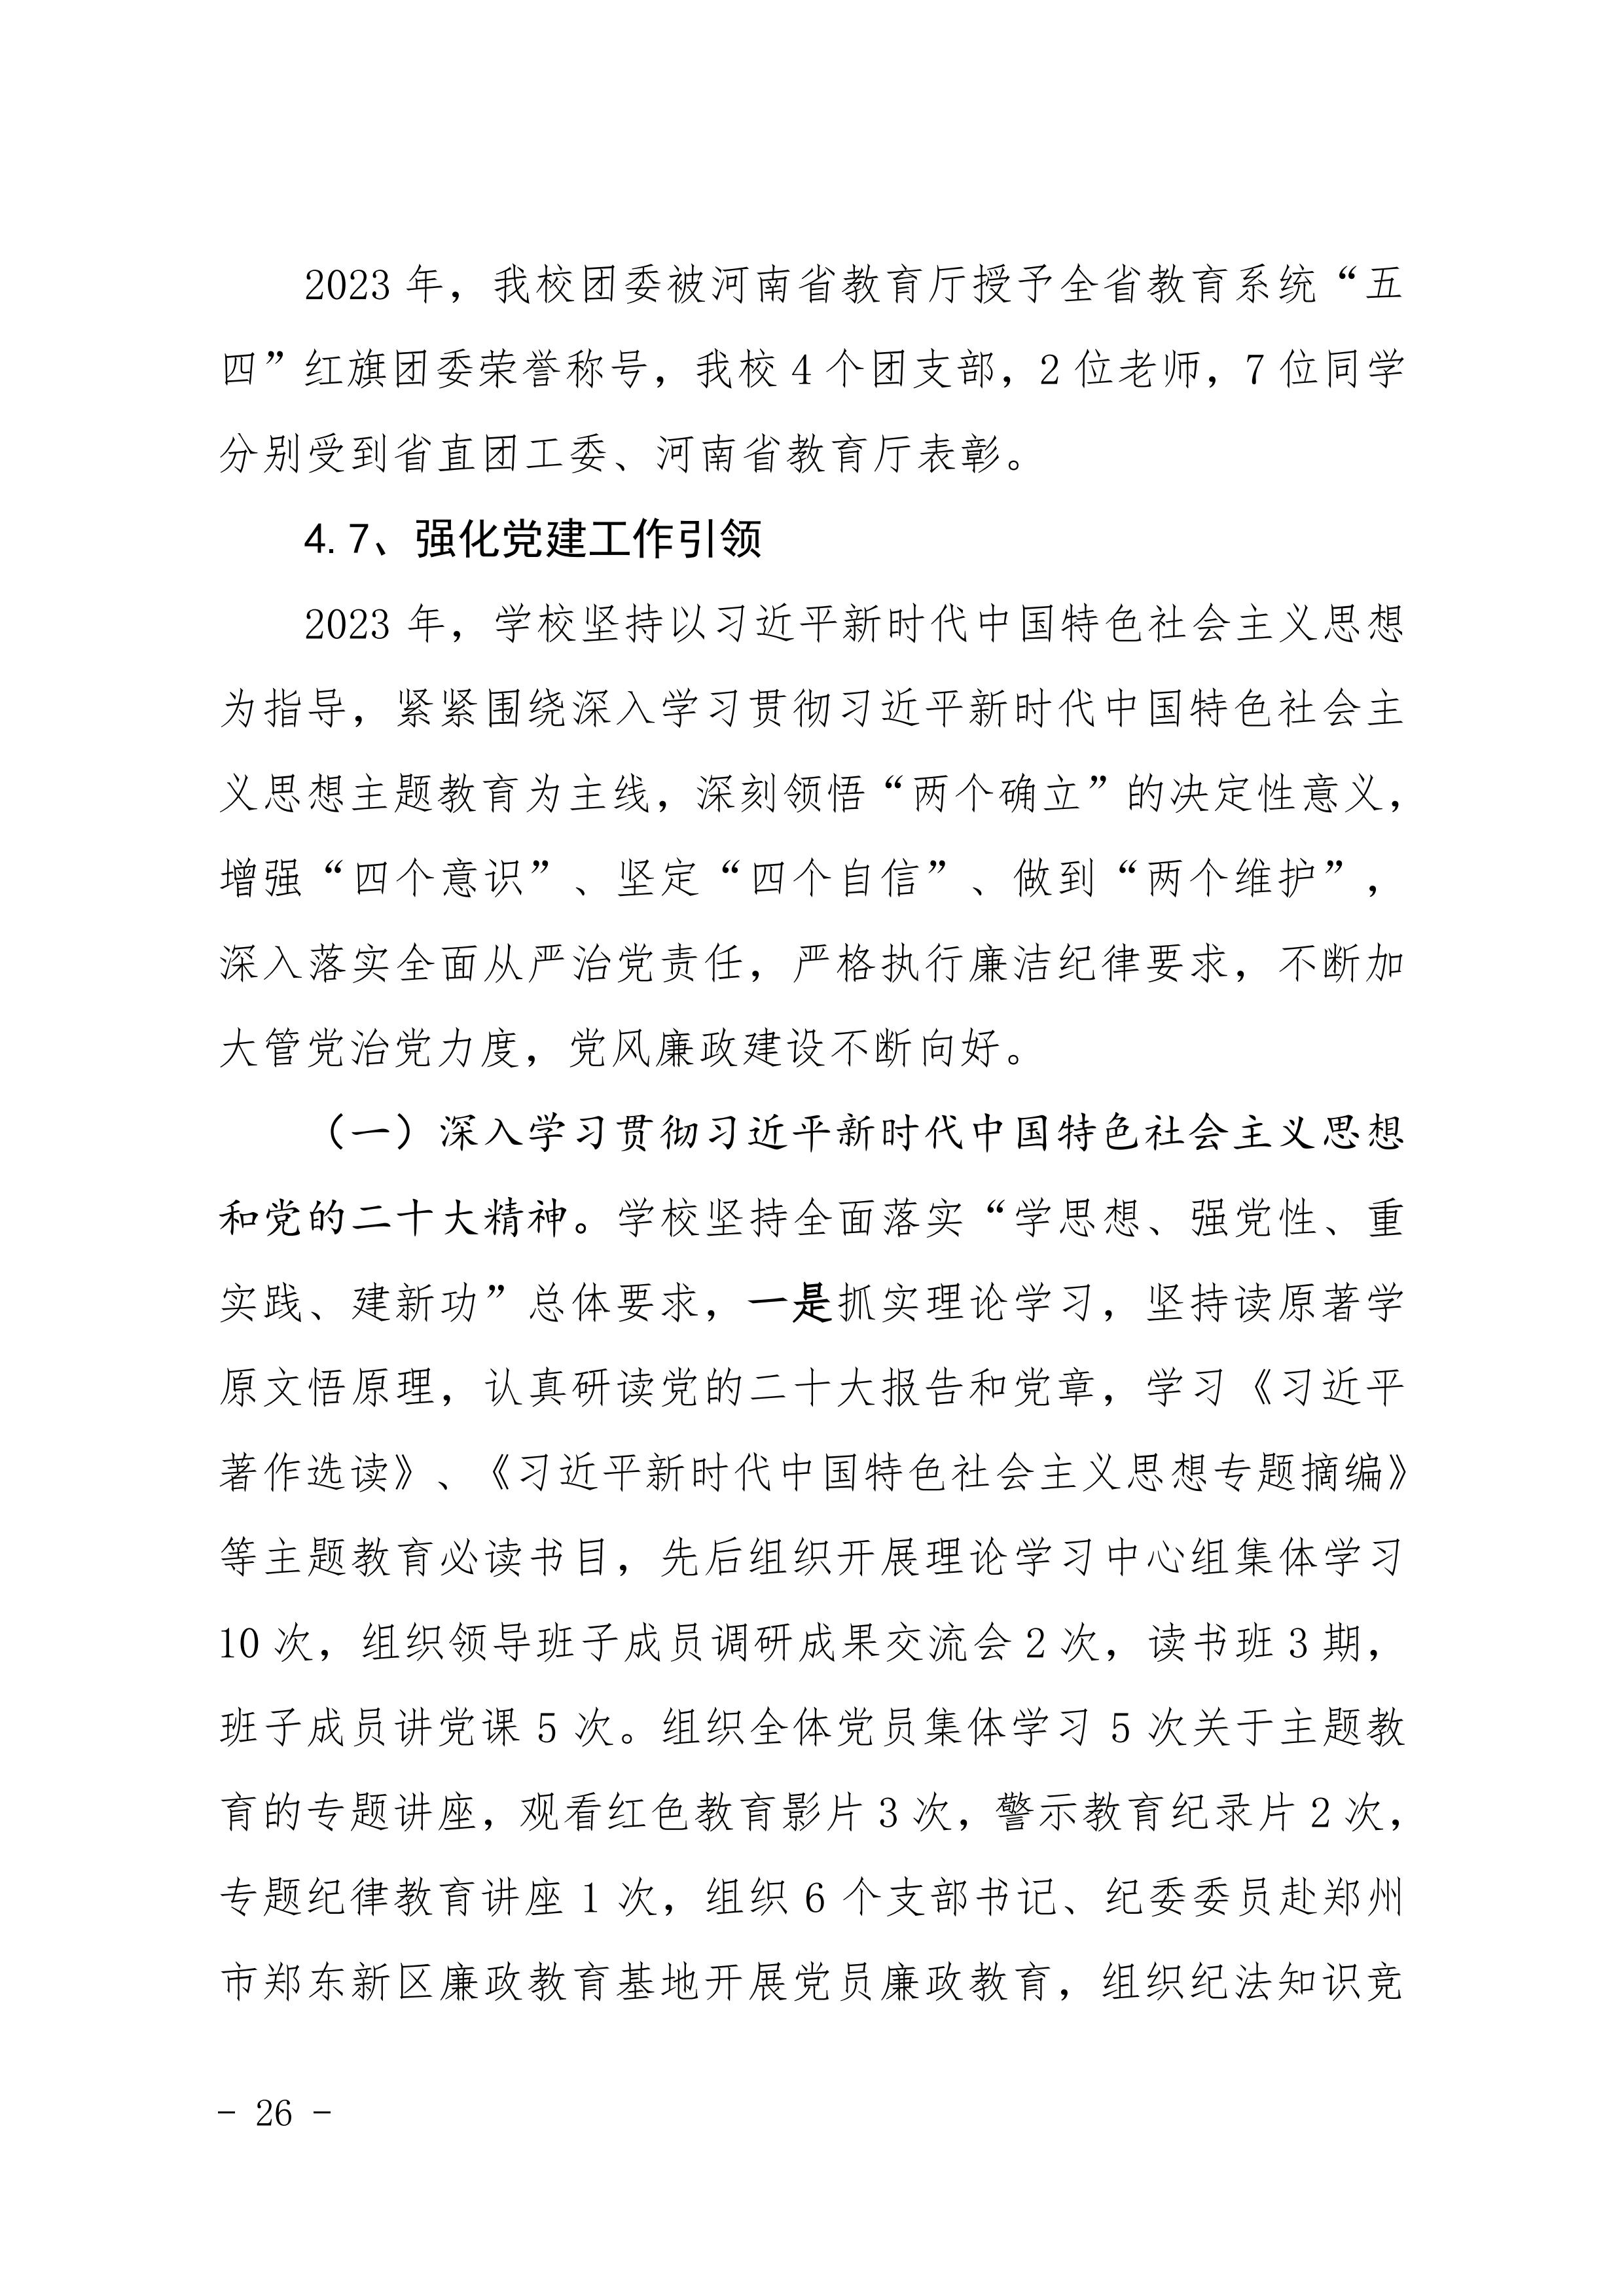 河南省民政学校职业教育质量报告（2023年度）发布版_29.jpg